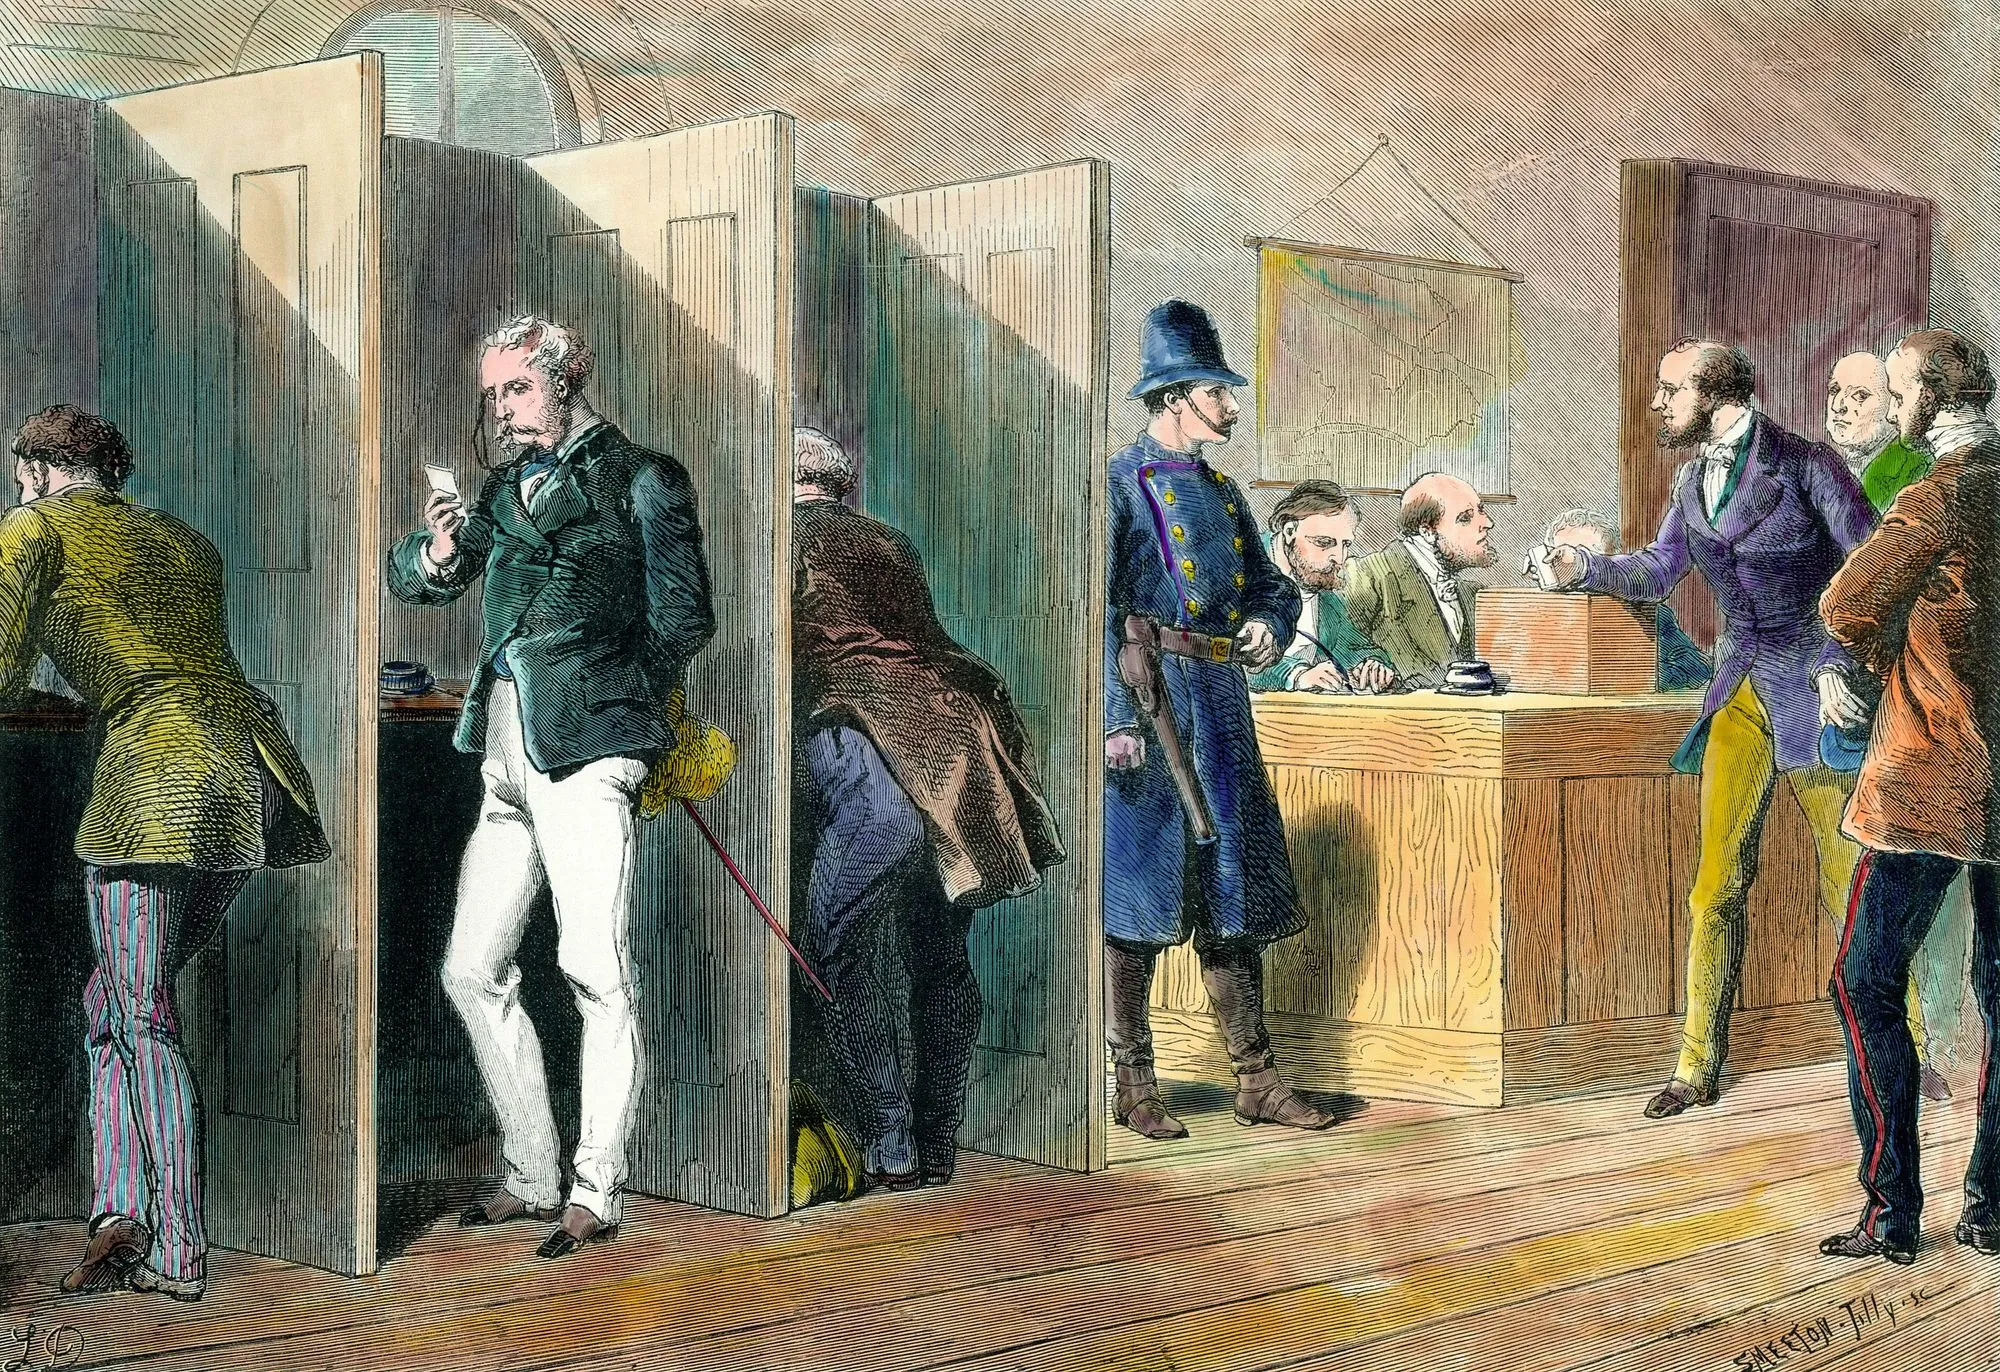 Intérieur d'un bureau de vote lors des élections en Angleterre avec représentation des isoloirs, gravure du XIXe siècle.